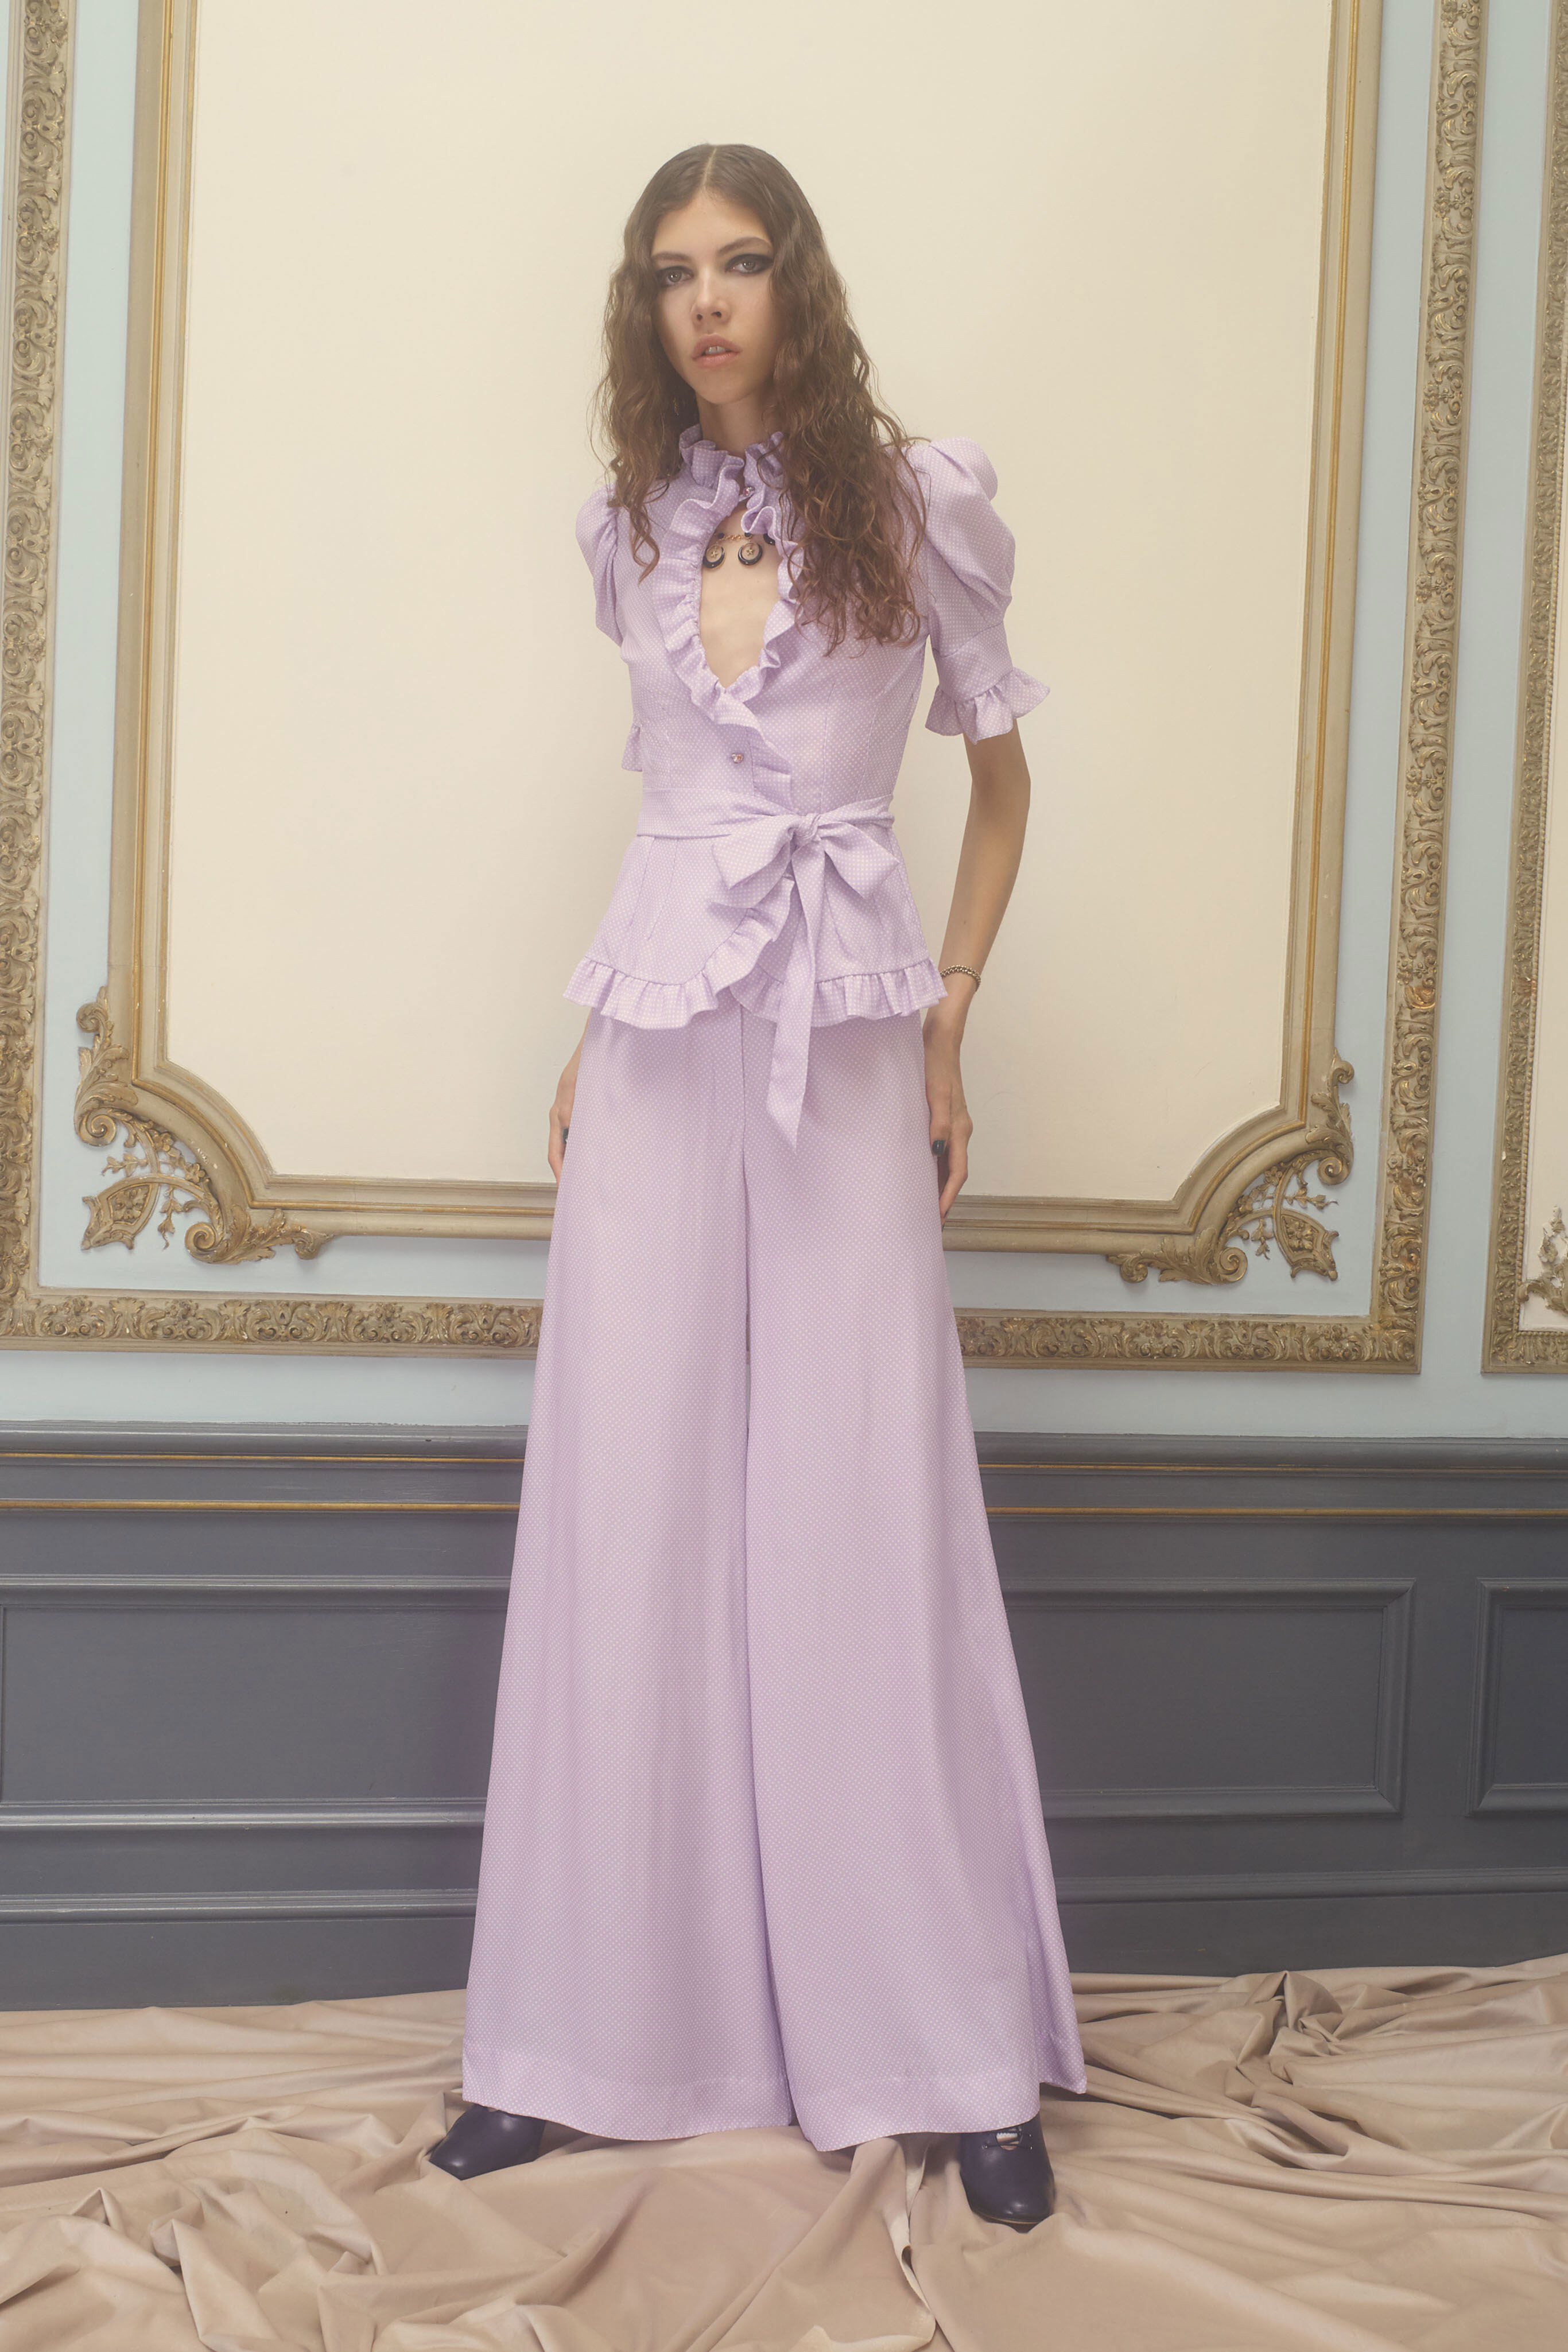 姊妹裙選哪種顏色才好？Pantone 2019力薦的甜美紫丁香色仙氣滿滿